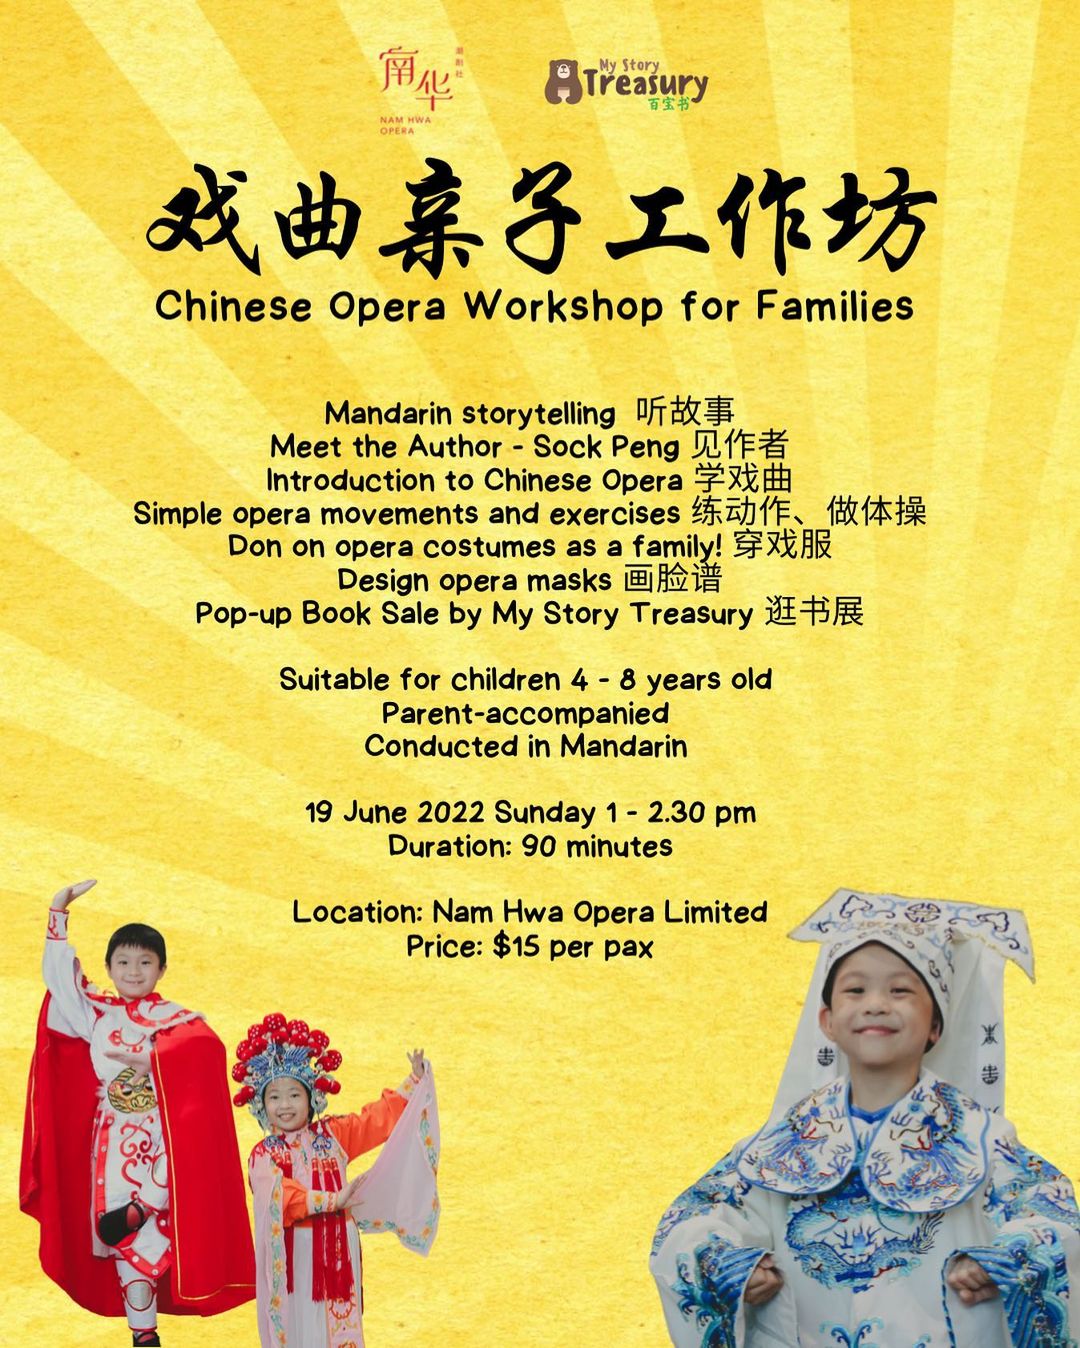 戏曲亲子 工作坊 Chinese Opera Workshop for Families